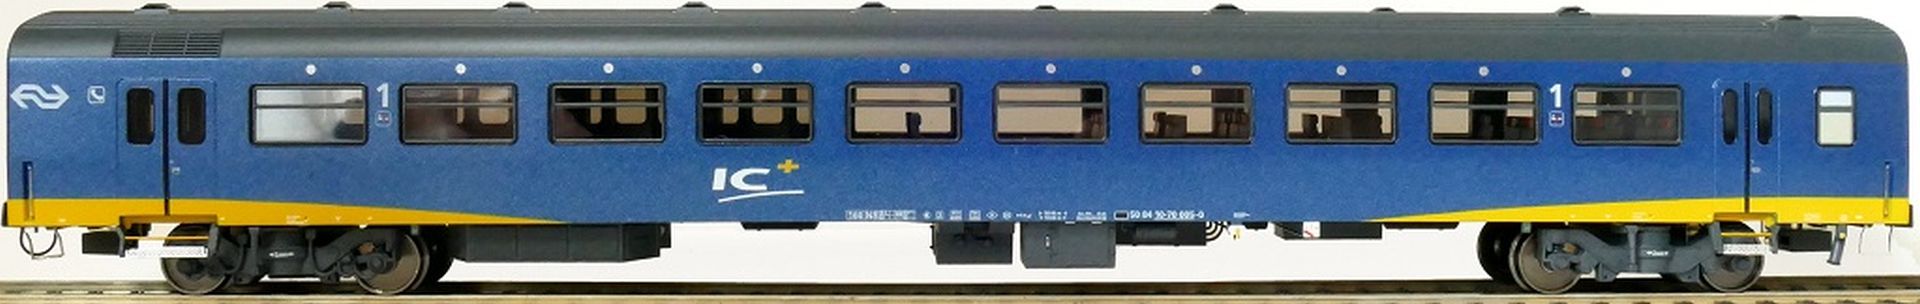 Exact-Train EX11182 - Personenwagen ICR Plus, A, NS, Ep.IV, mit Innenbel. und Figuren